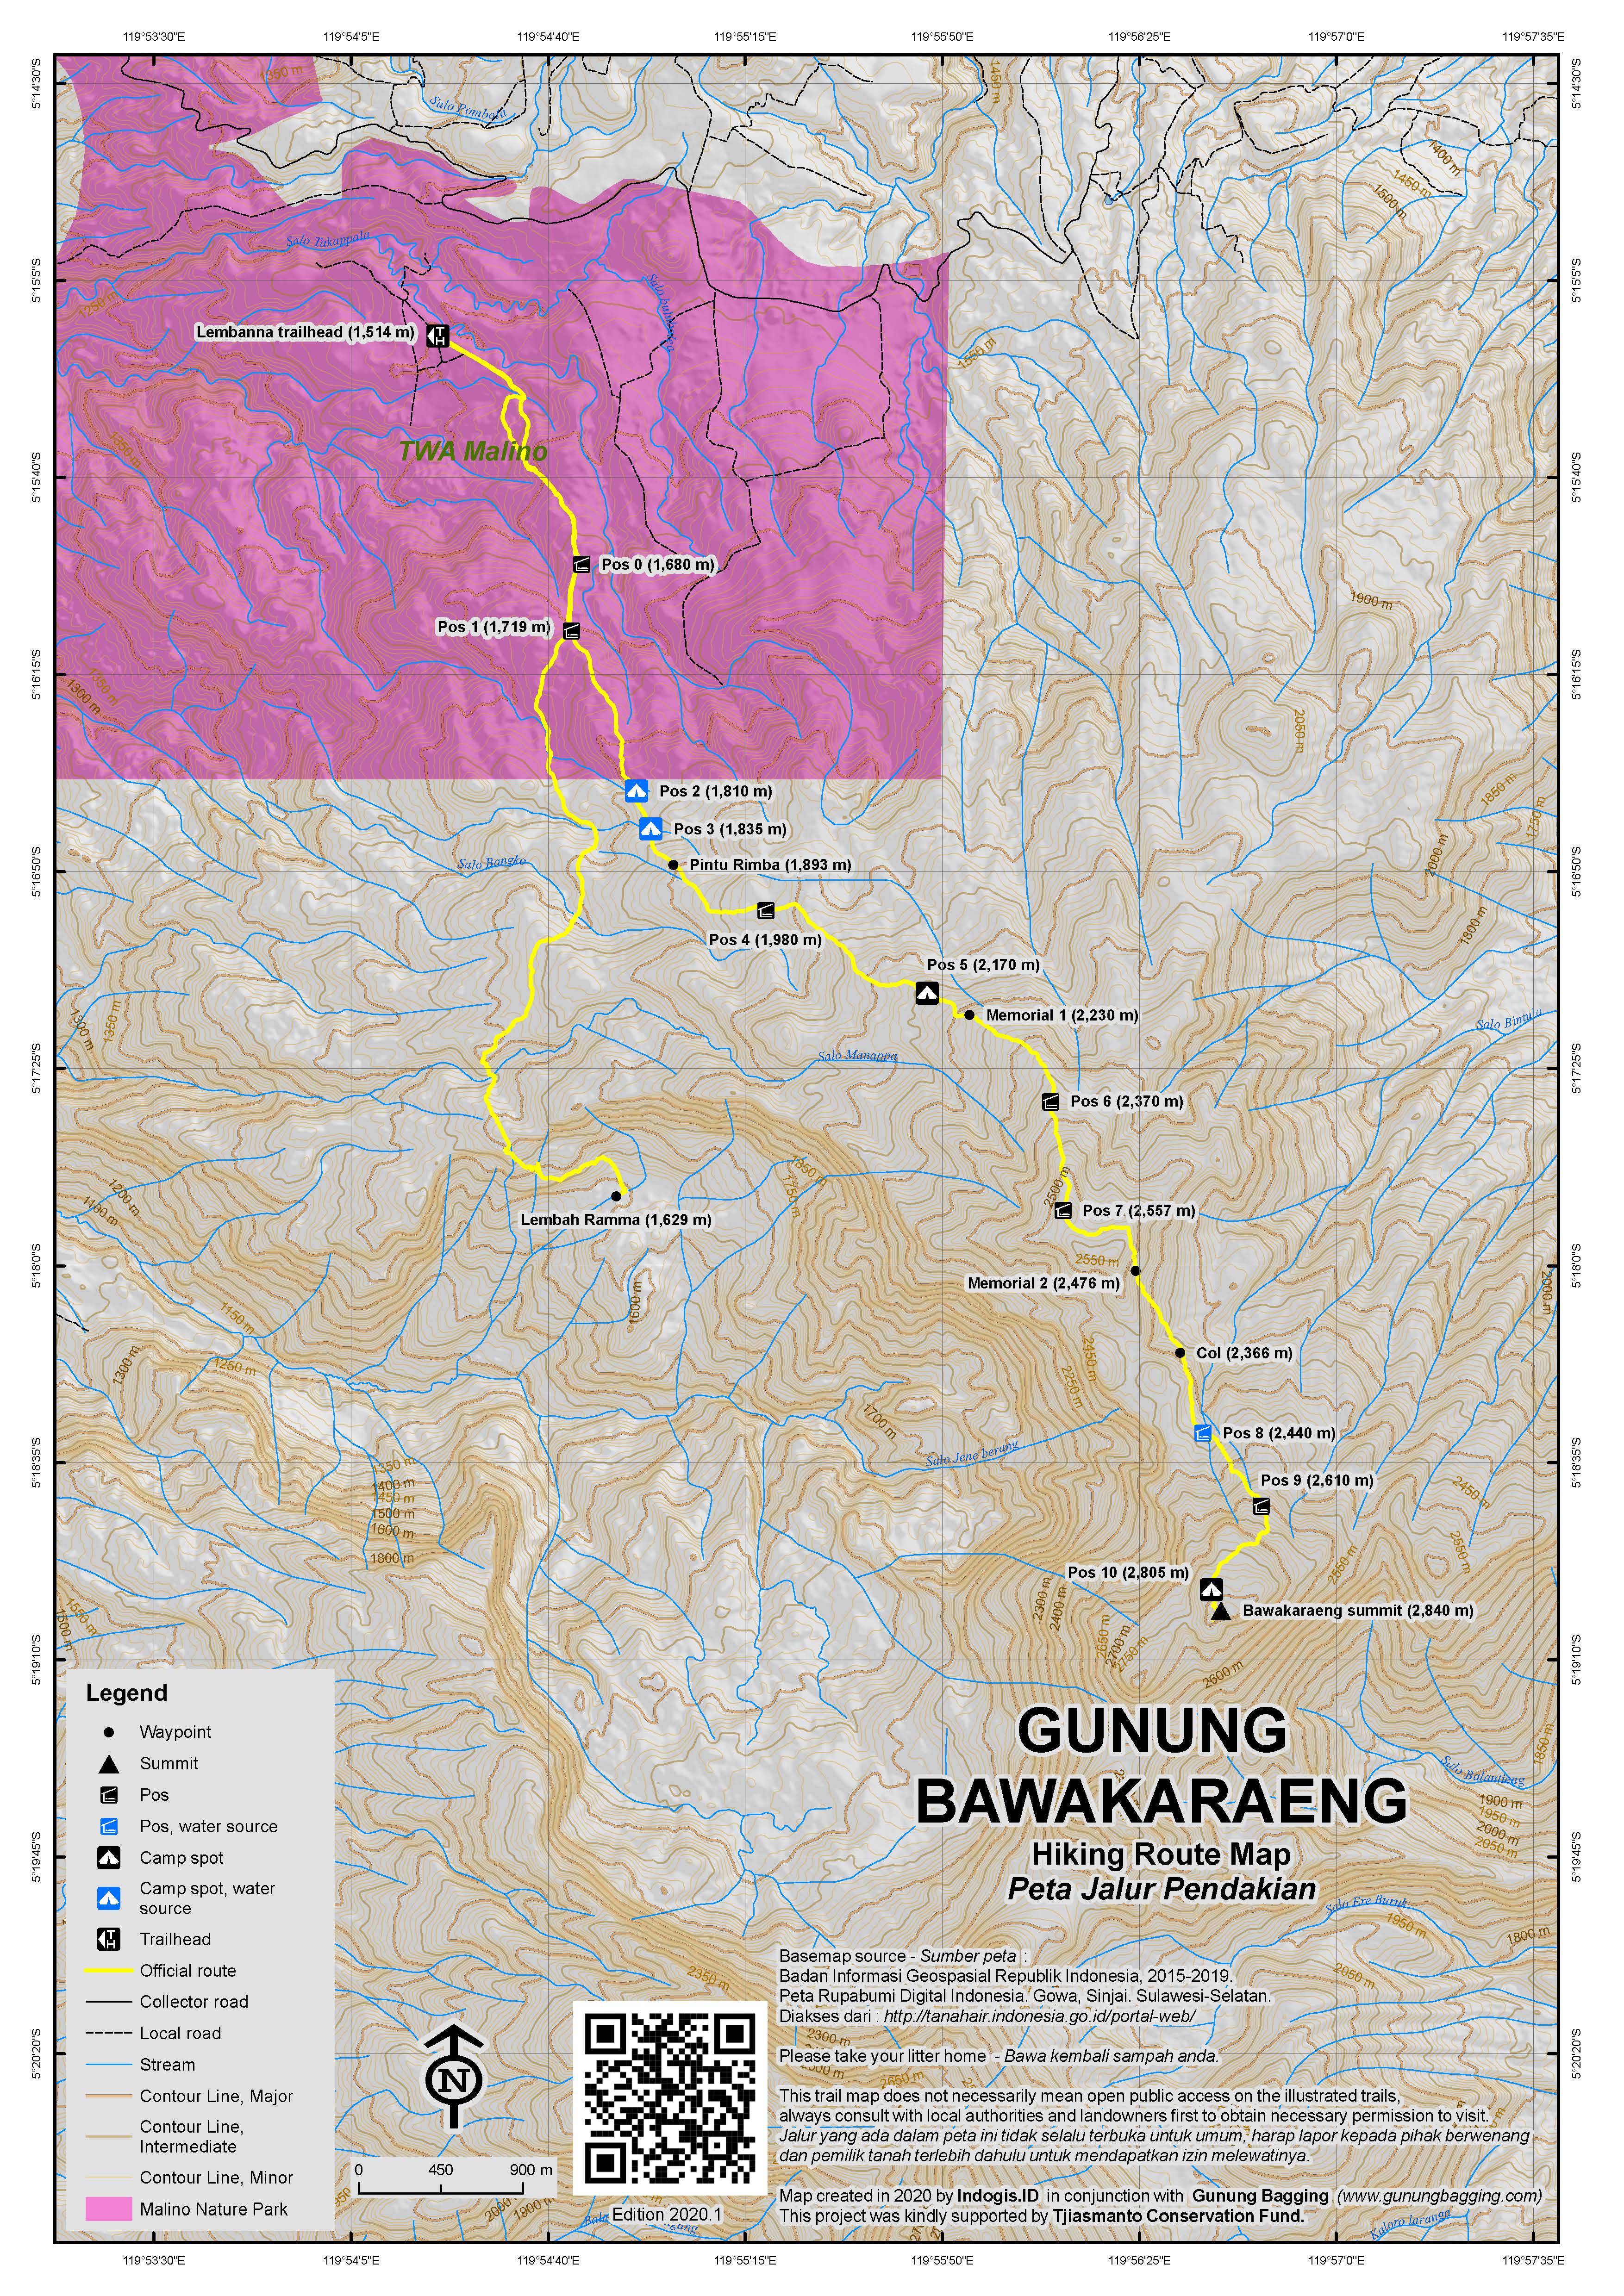 Peta Jalur Pendakian Gunung Bawakaraeng